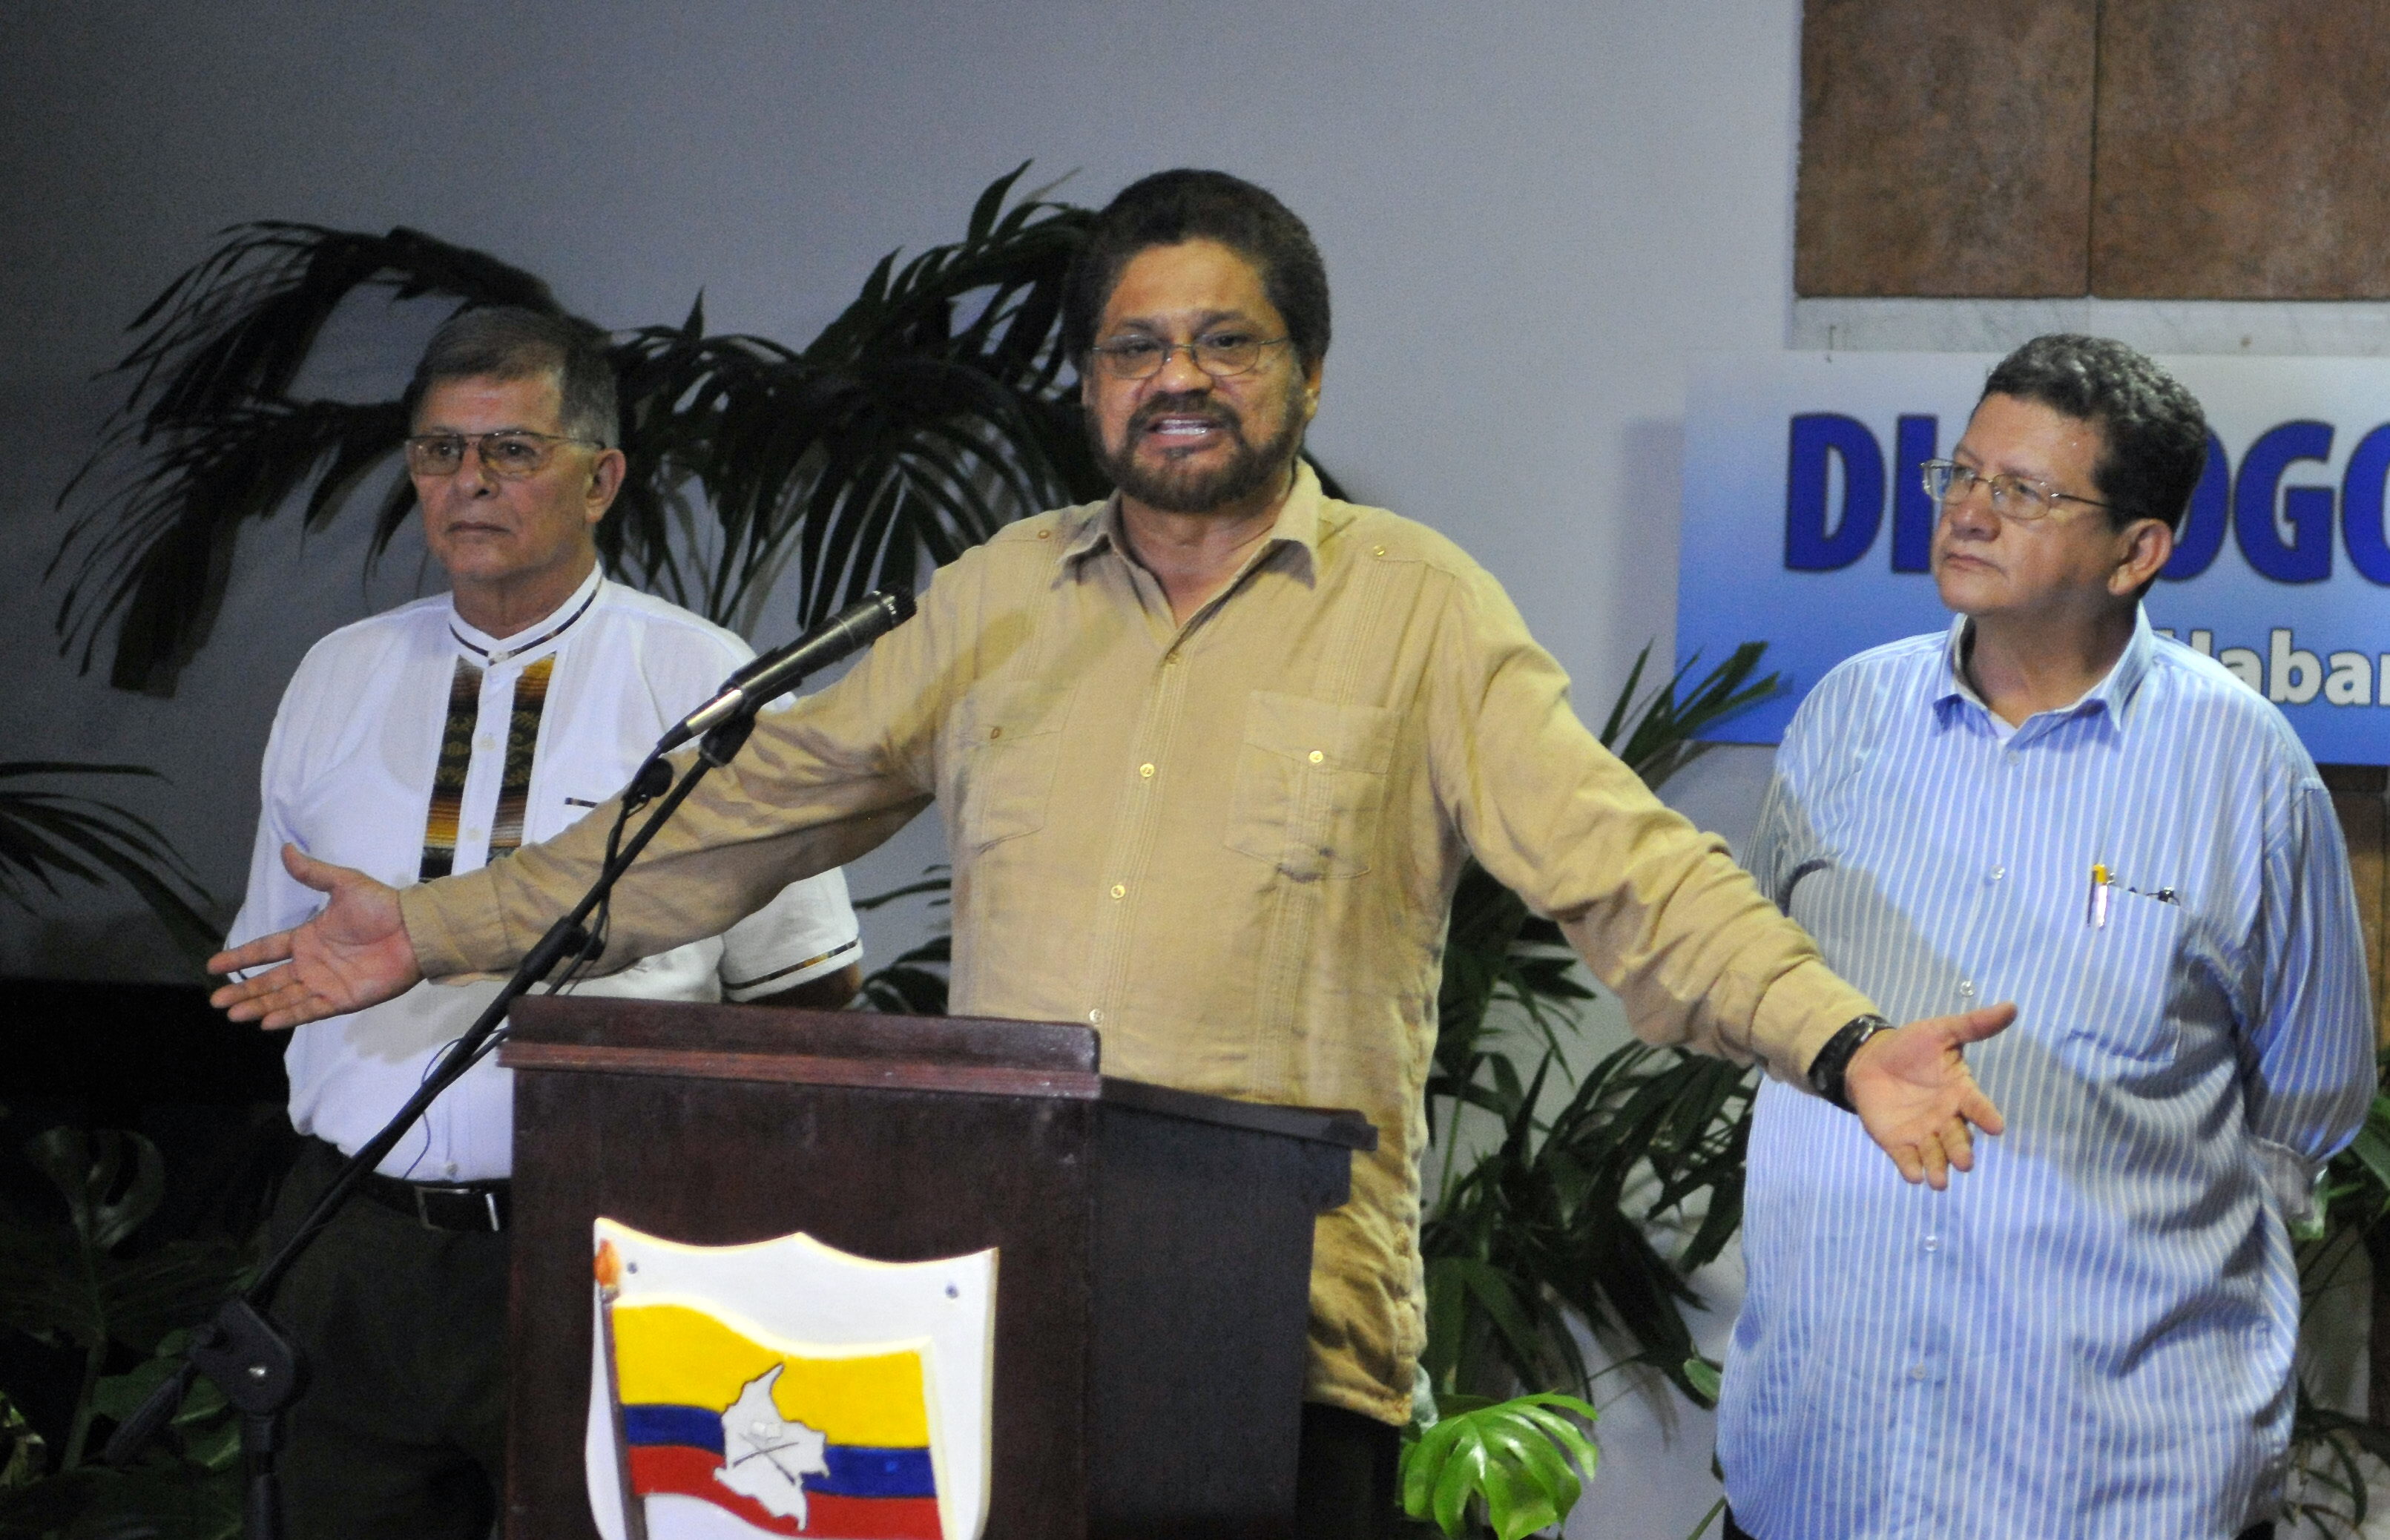 El Gobierno colombiano descarta una tregua bilateral tras anuncio de guerrillas